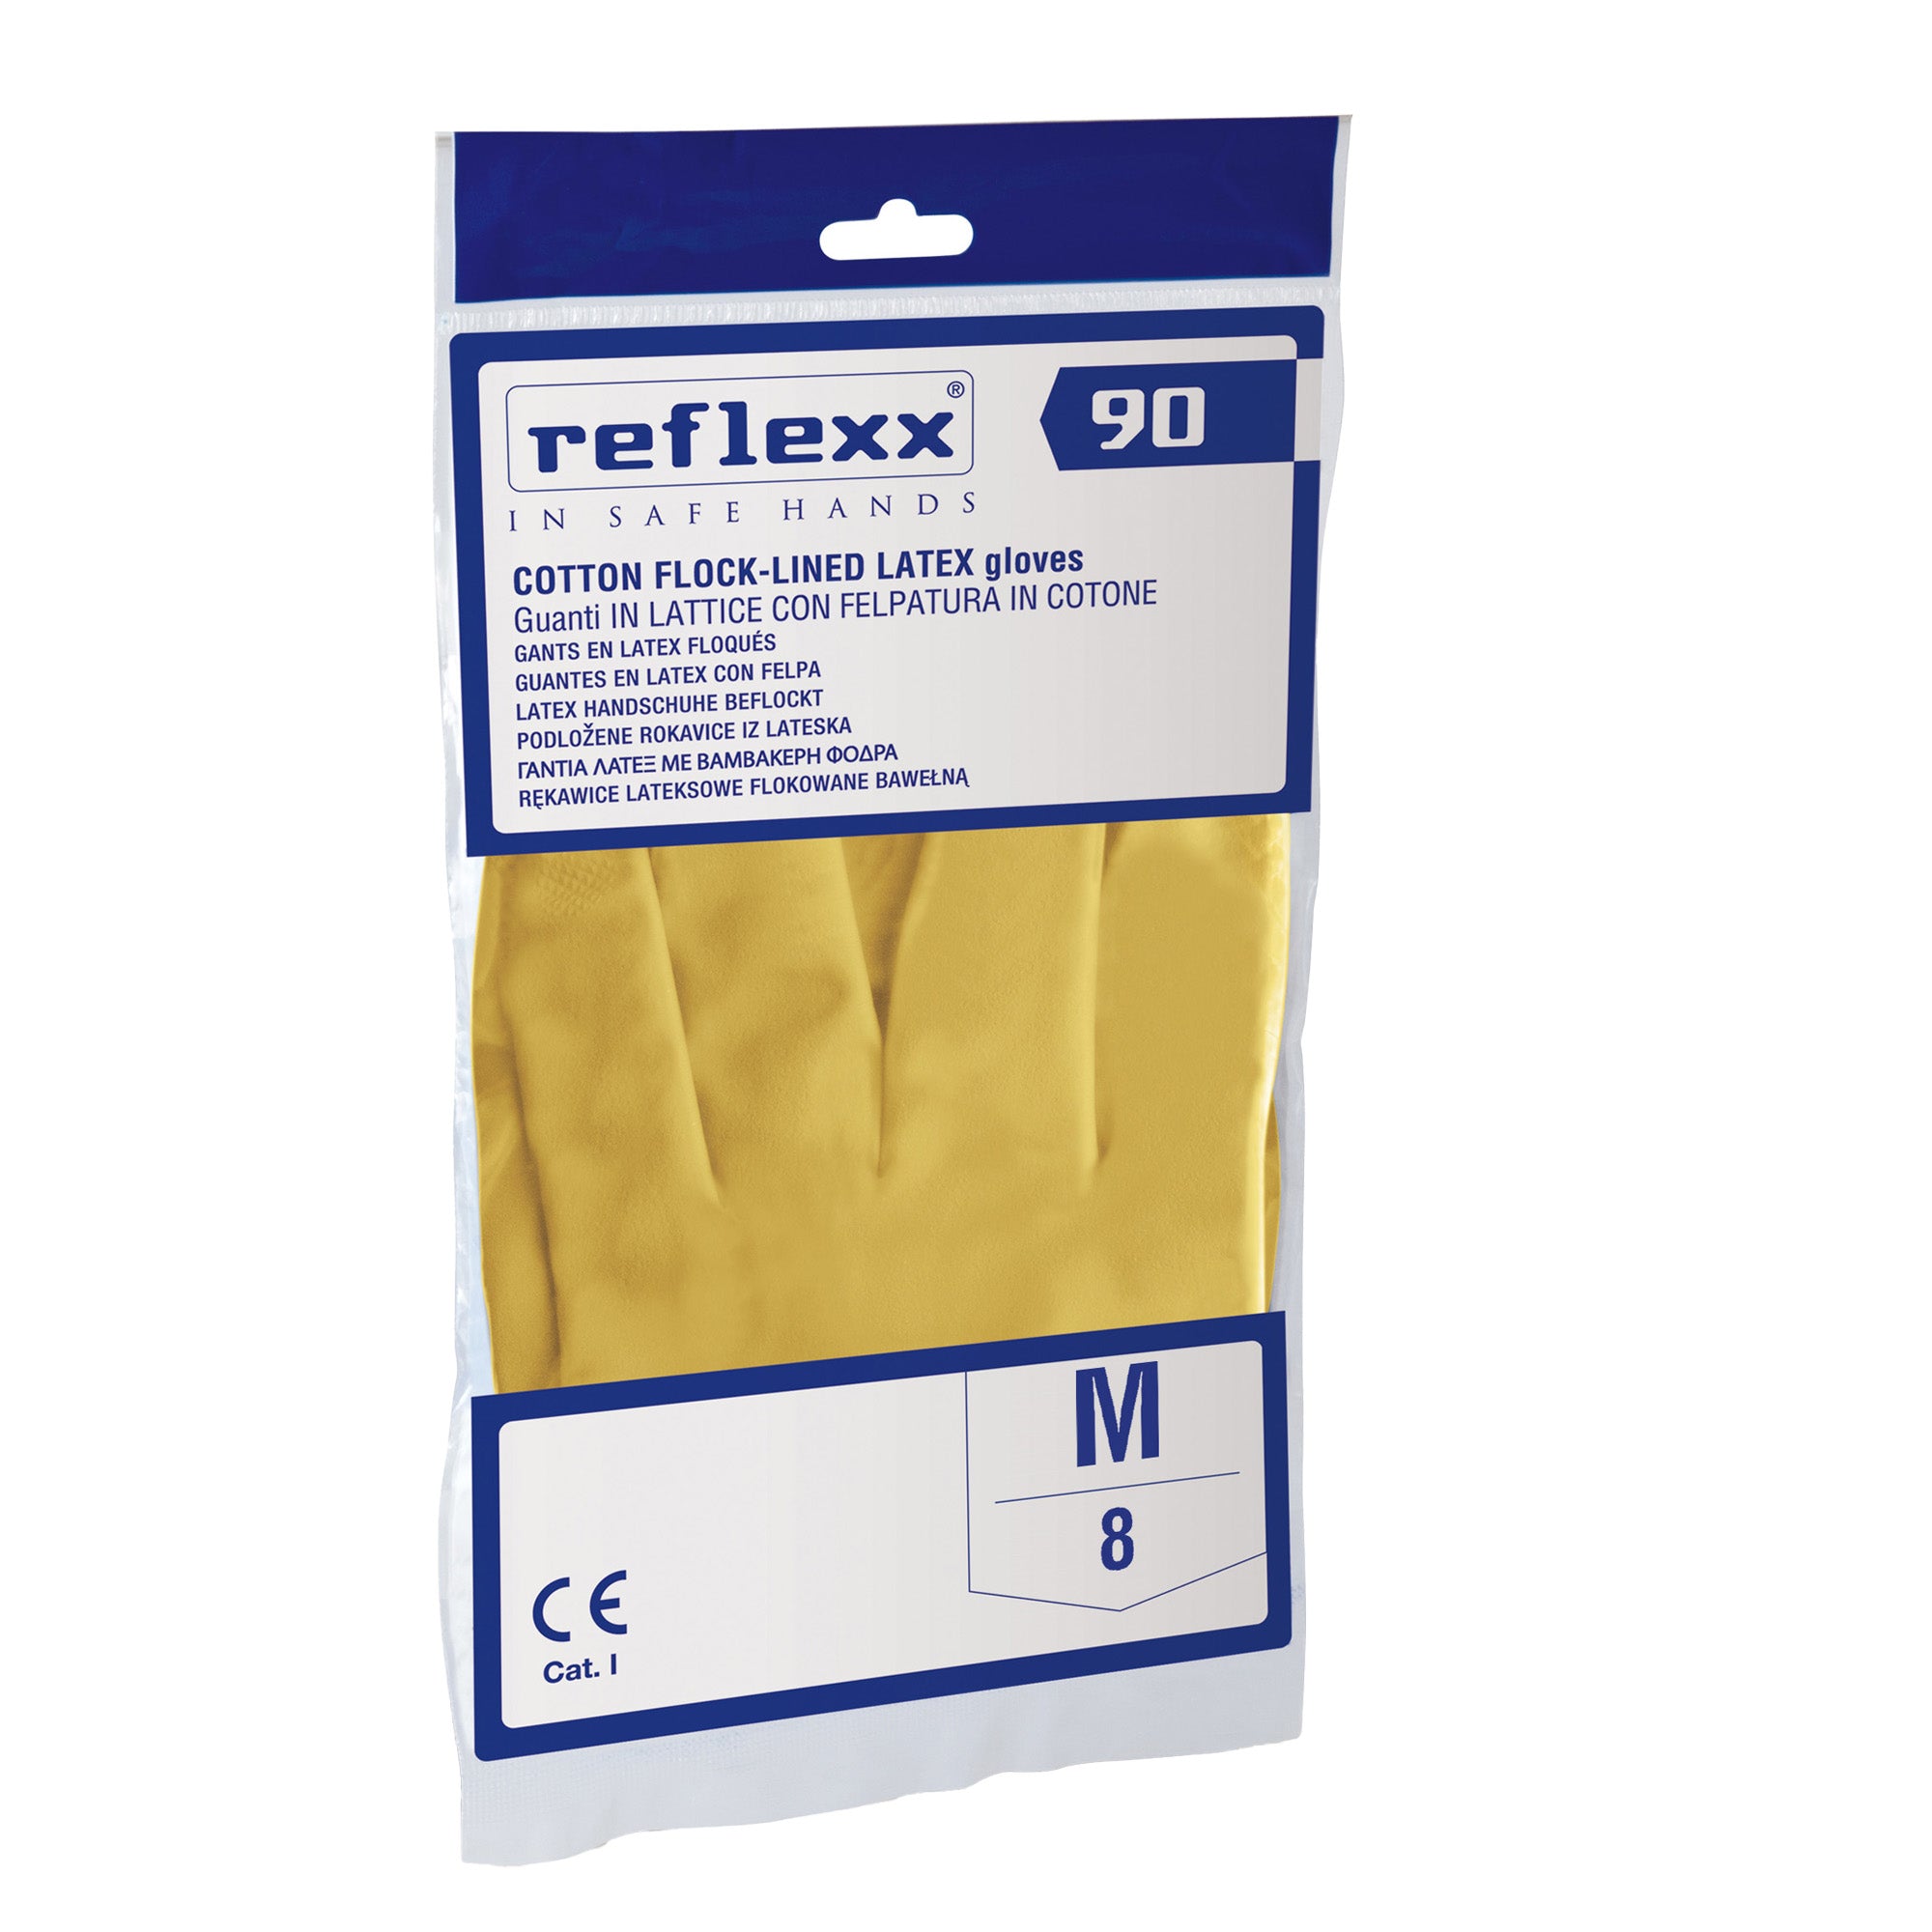 reflexx-coppia-guanti-lattice-felpato-r90-tg-m-giallo